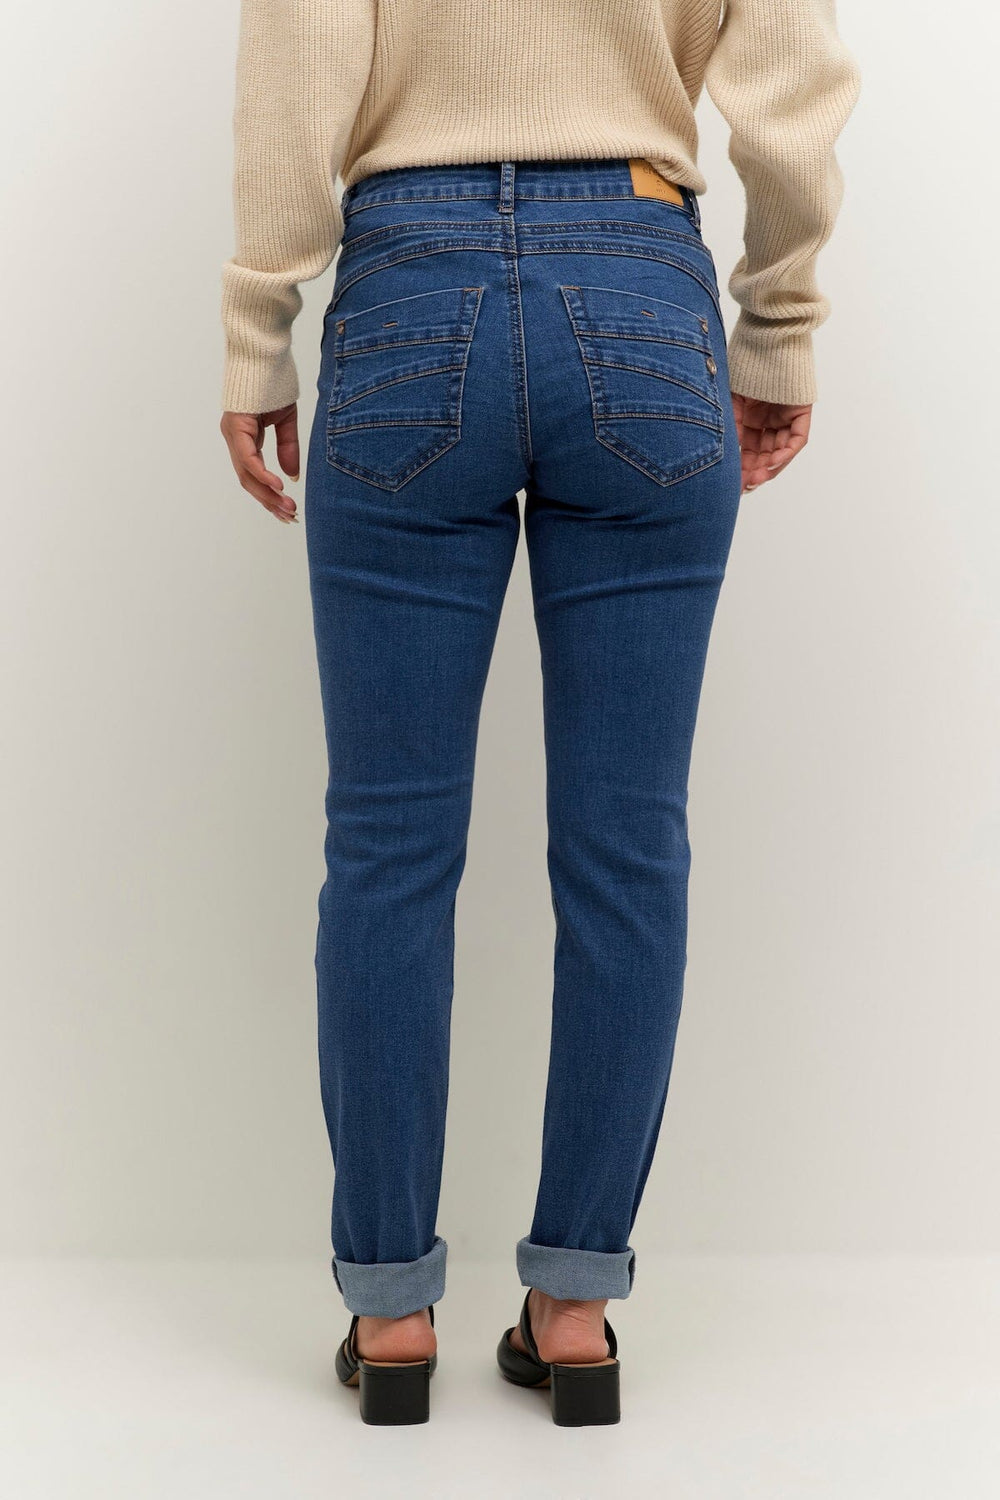 Jeans Femme - Bas - Pantalon - Jeans Cream